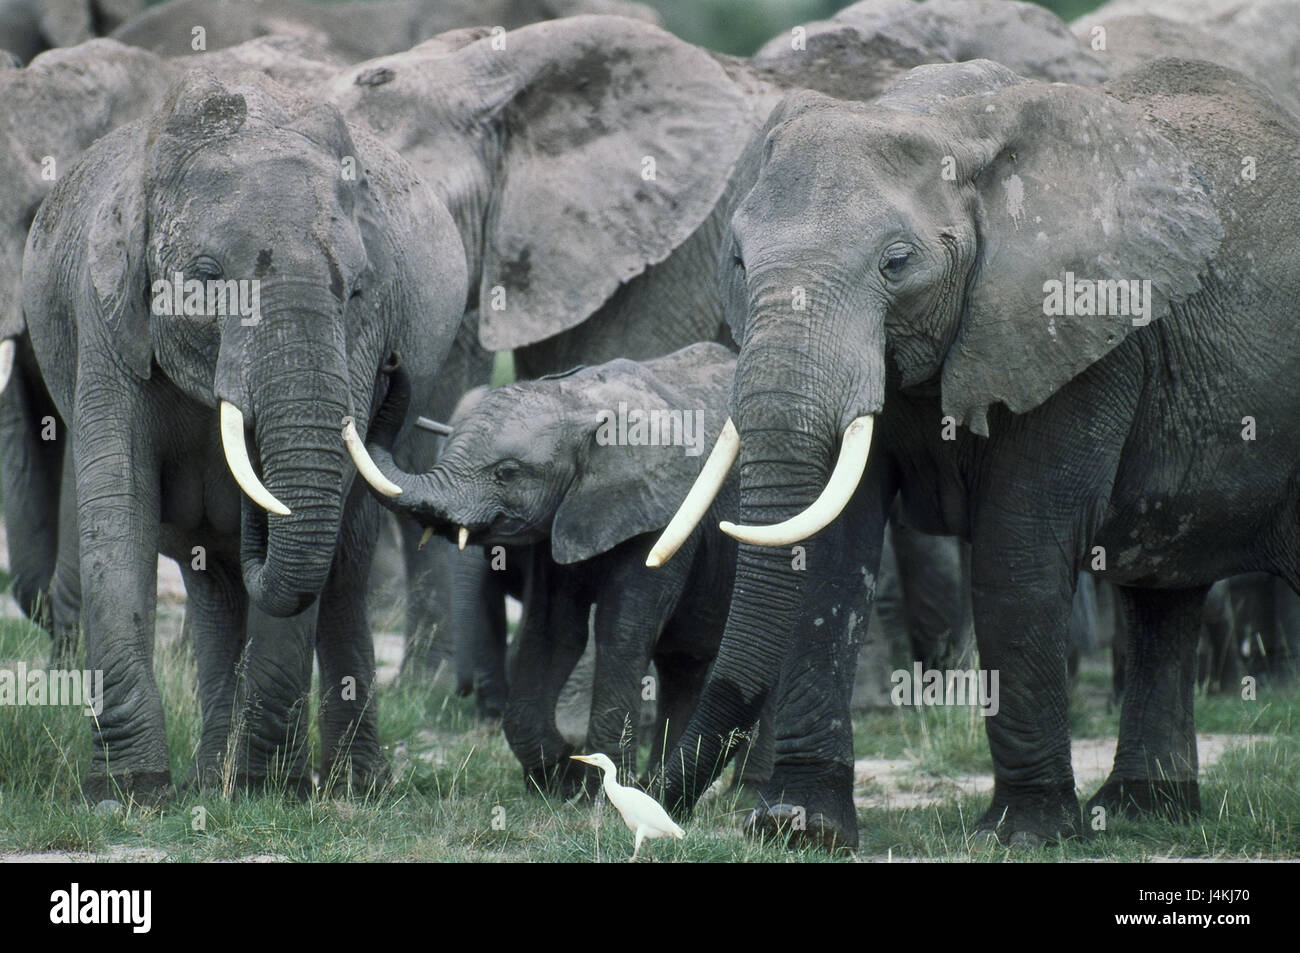 Afrikanische Elefanten, Loxodonta Africana, konzentriert sich, junge Tier Tiere, wilde Tiere, Säugetiere, Elefanten, Elefanten konzentriert sich, Stamm Tiere, Landsäugetiere, Dickhäuter, Einnahme, Tierwelt, Fauna Stockfoto